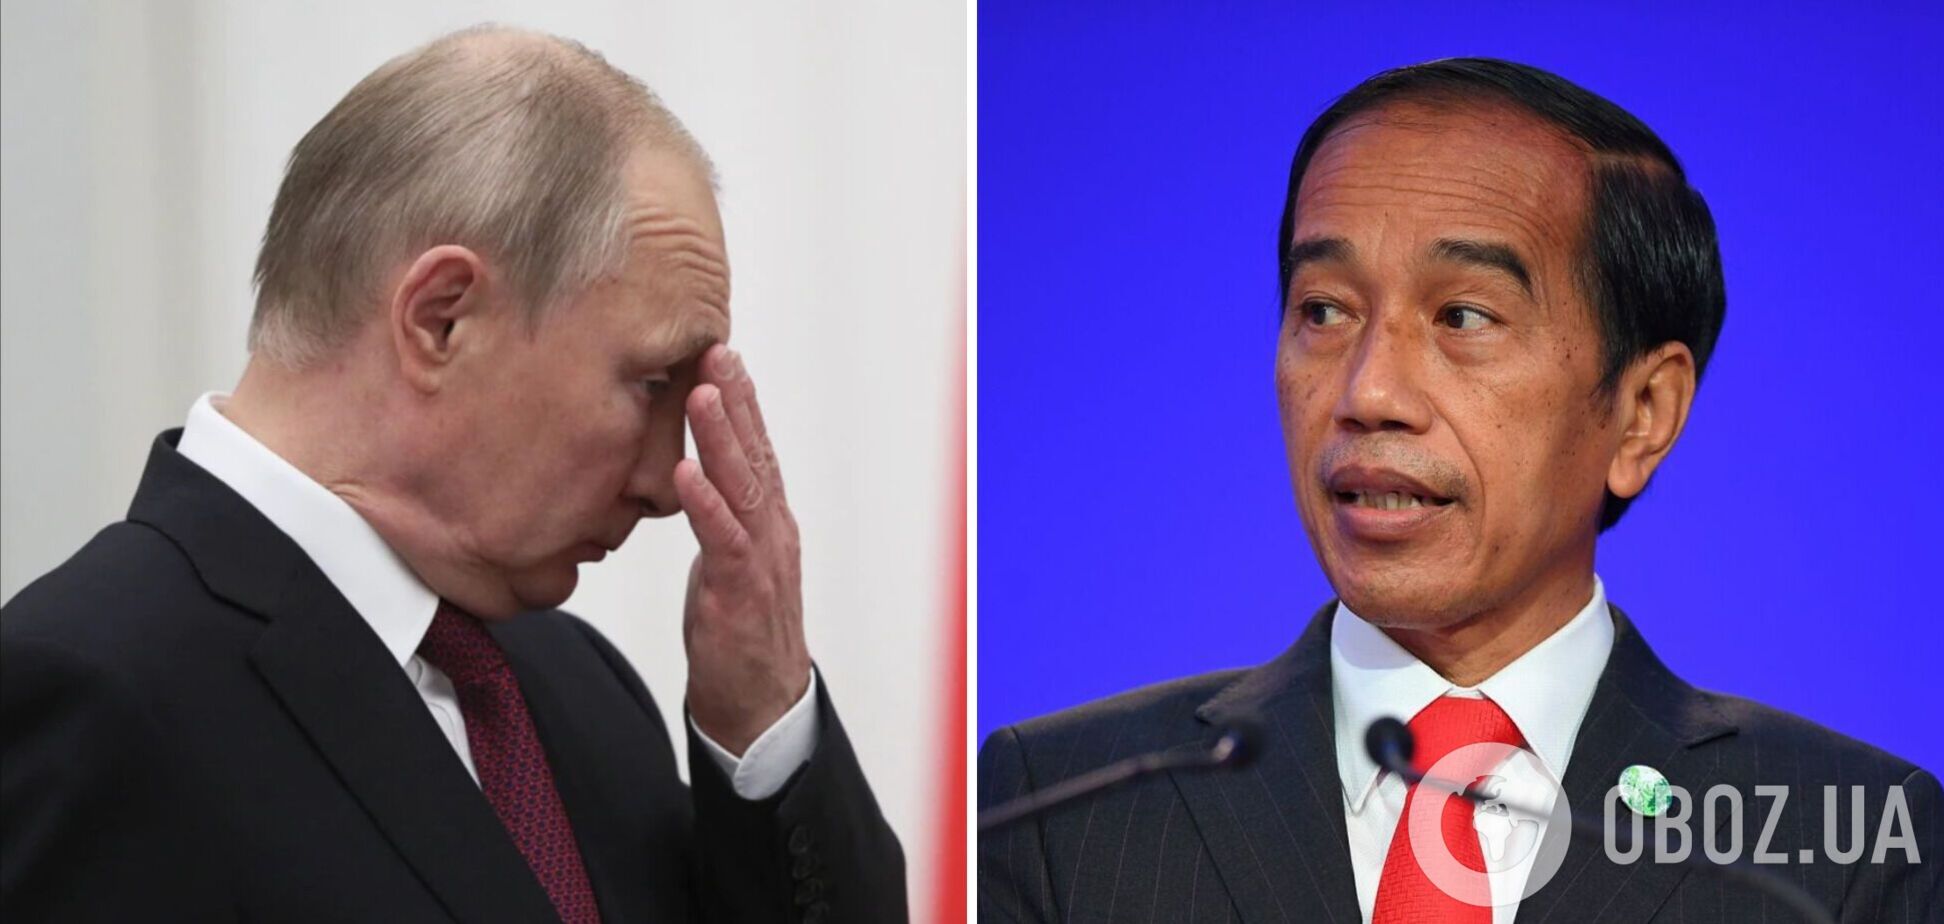 Путин опозорился, приветствуя президента Индонезии 'впервые в России': Видодо был в Сочи шесть лет назад